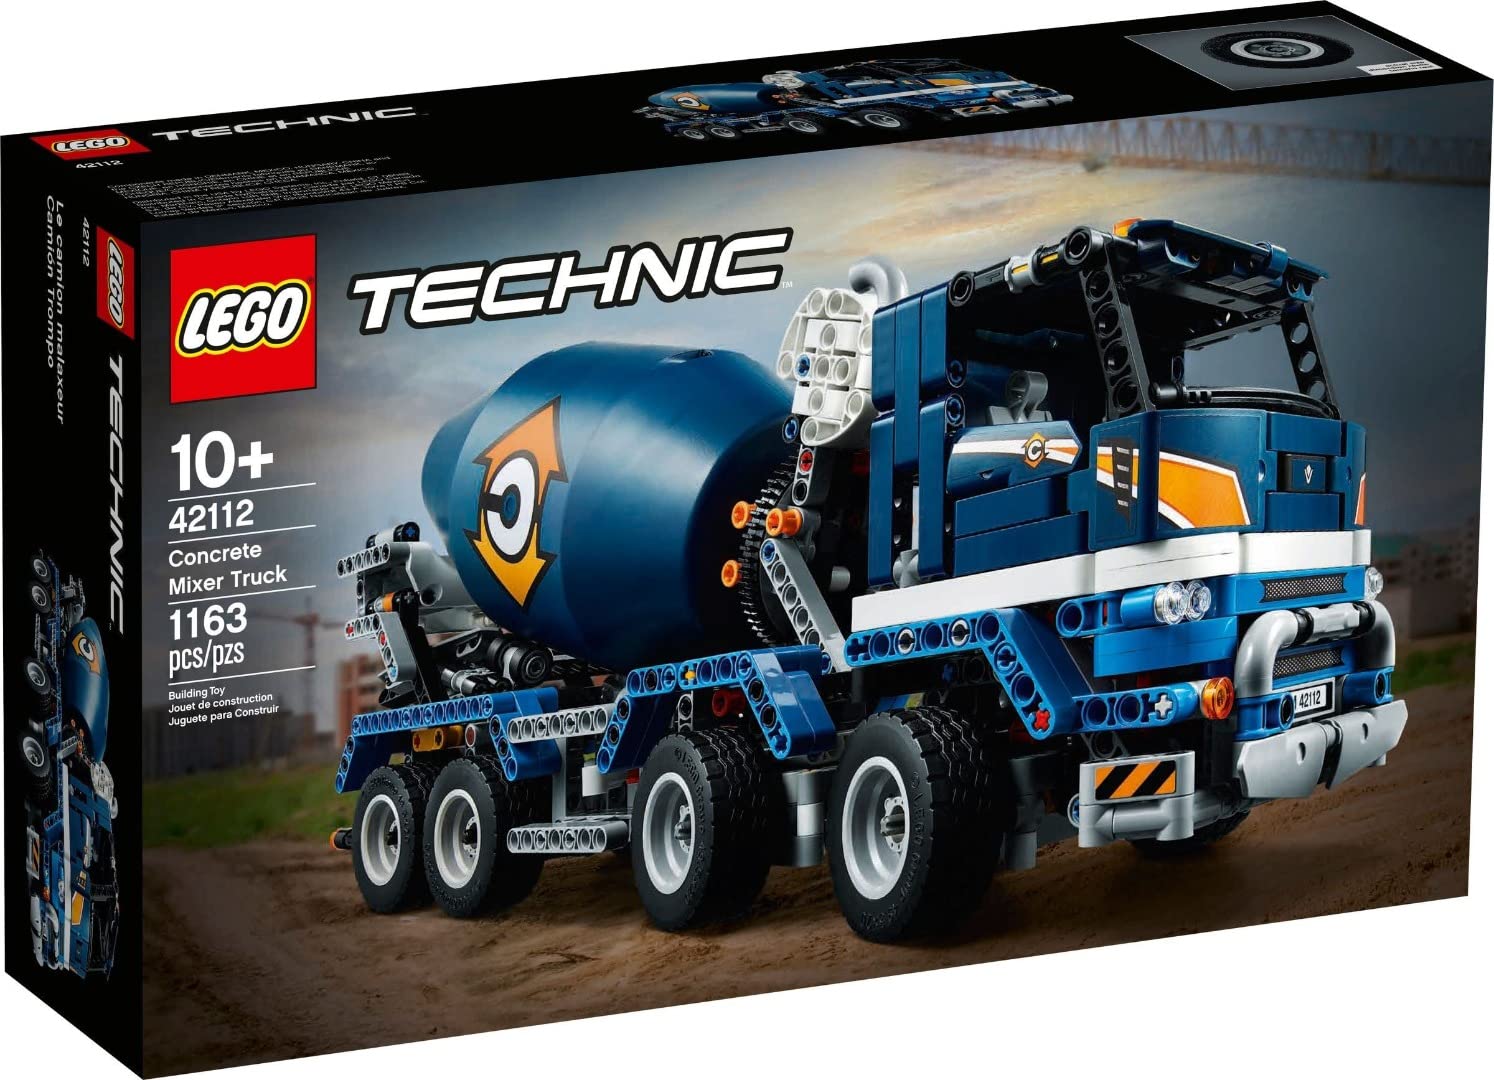 LEGO 42112 Technic Betonmischer-LKW, Mischmaschine, Spielzeug für Kinder ab 10 Jahre, Baufahrzeug mit interaktiven Funktionen